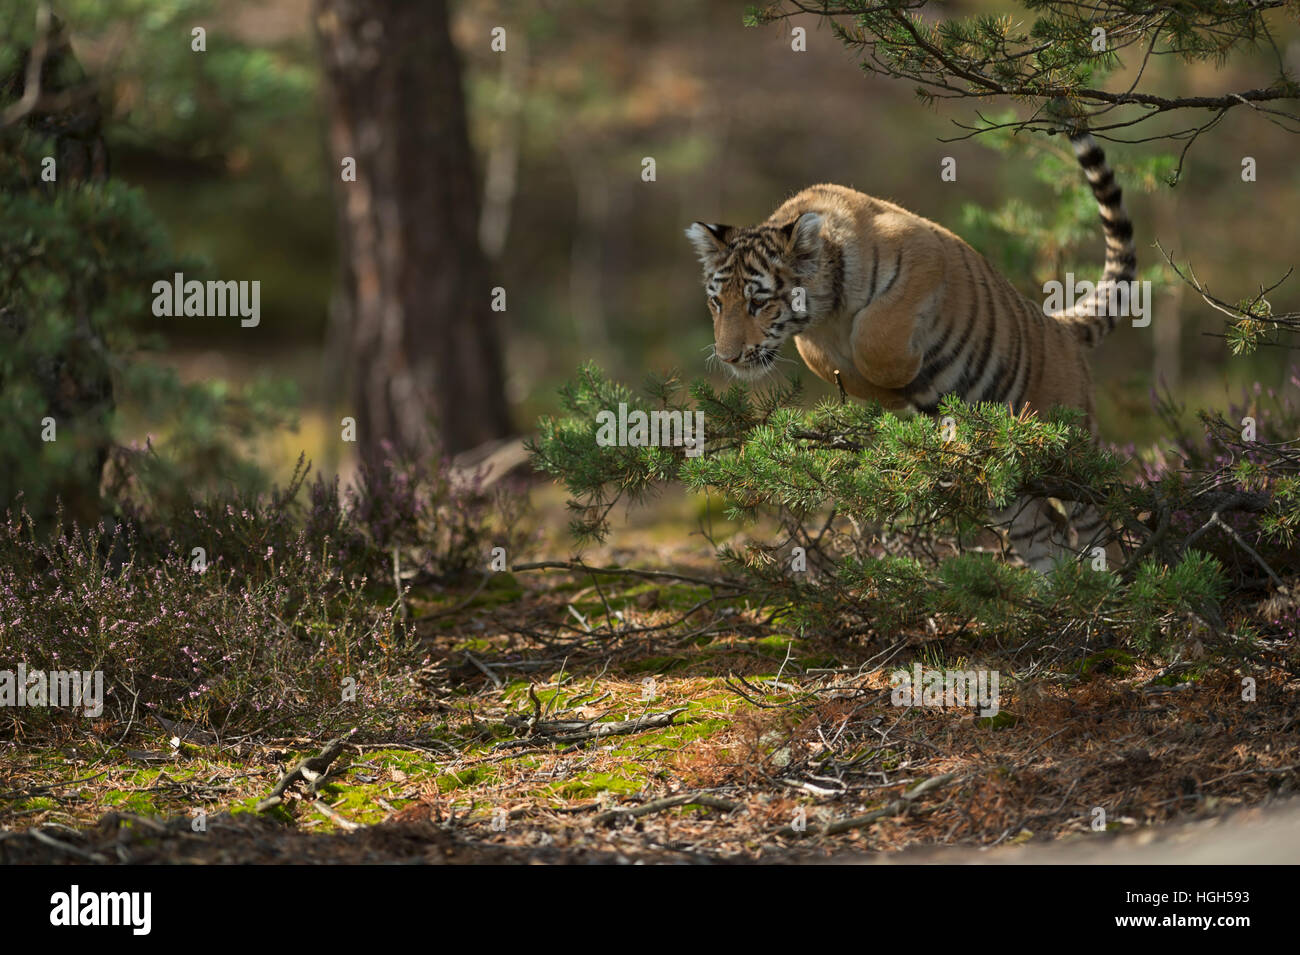 Tigre du Bengale royal / koenigstiger ( Panthera tigris ),courir, sauter dans le sous-bois de conifères et de bois. Banque D'Images